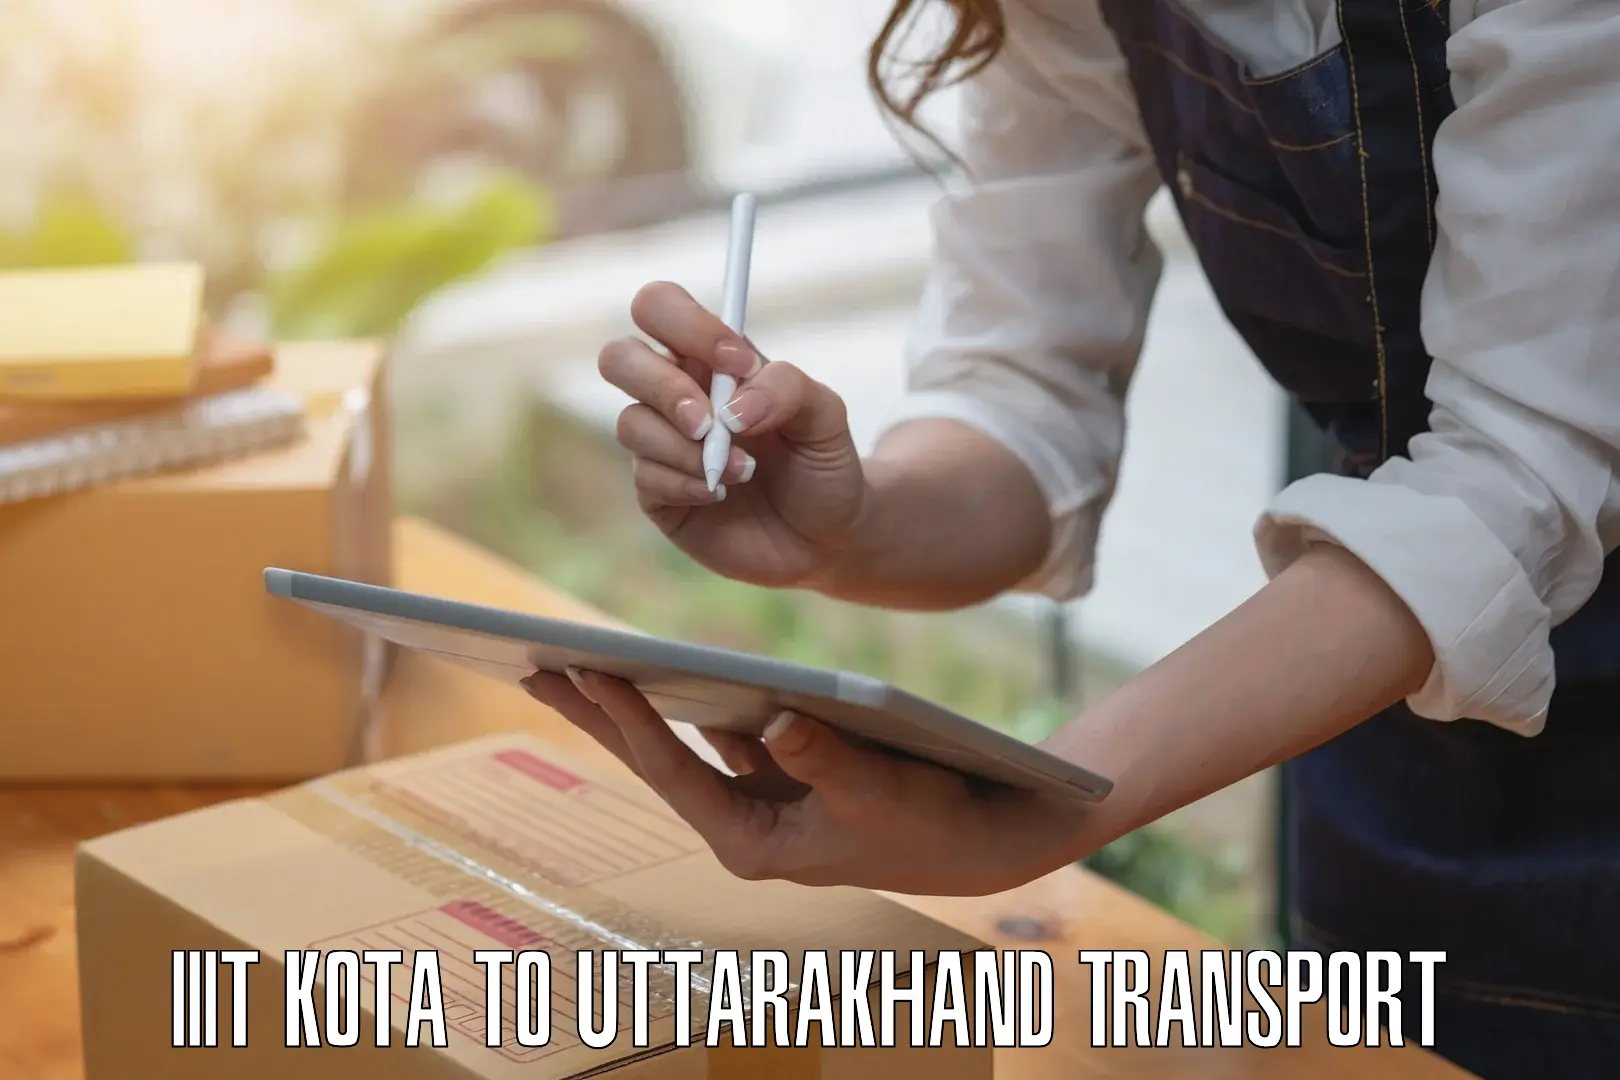 Bike transfer IIIT Kota to Uttarakhand